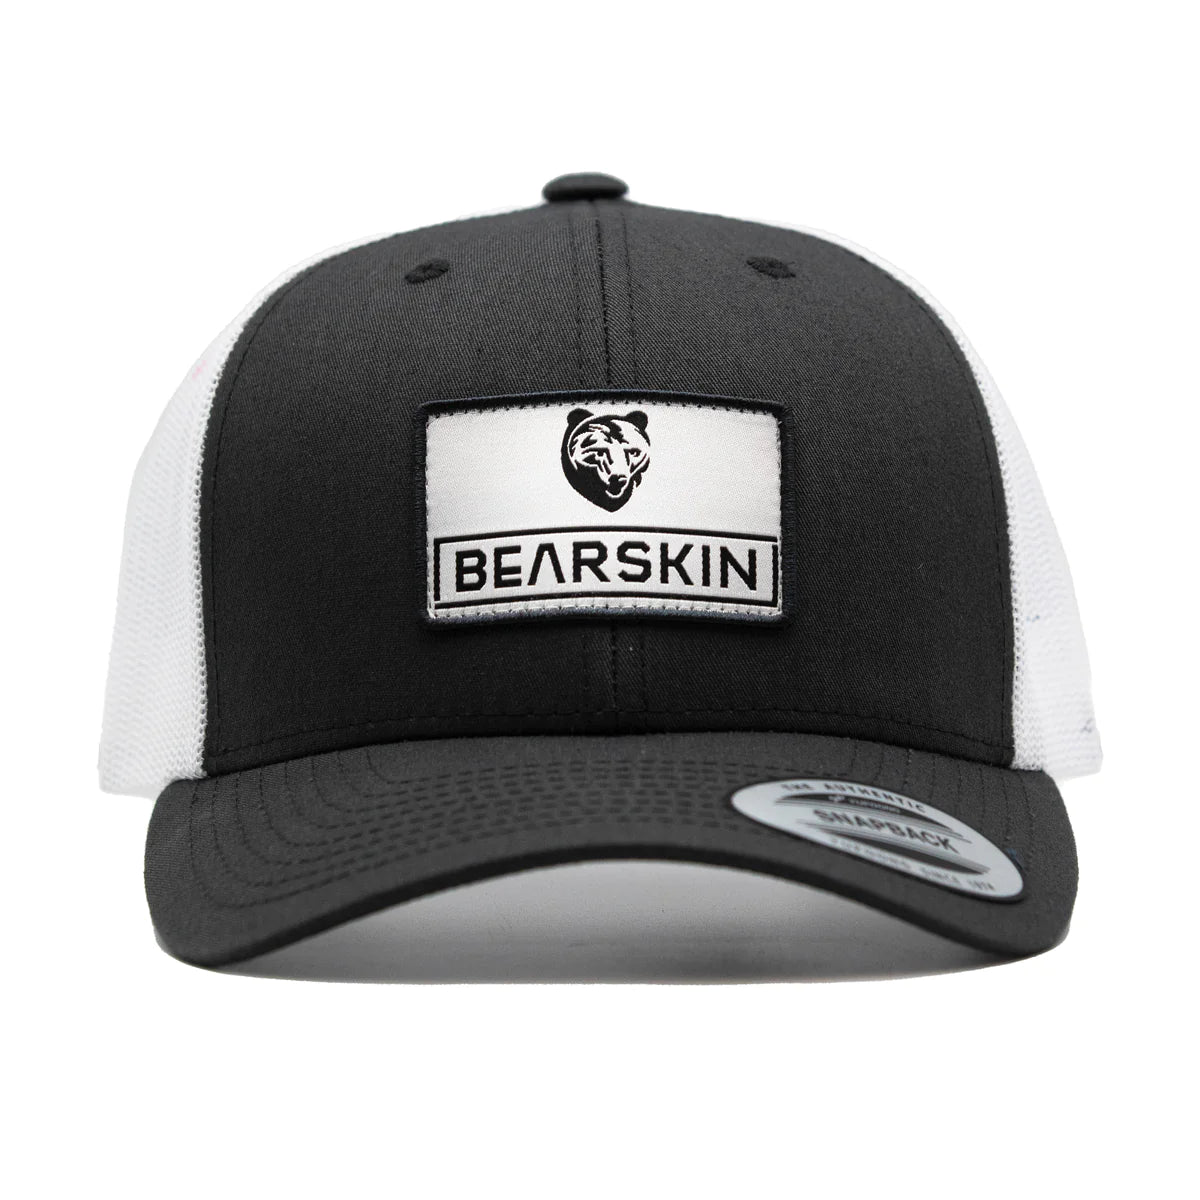 Bearskin Trucker cap